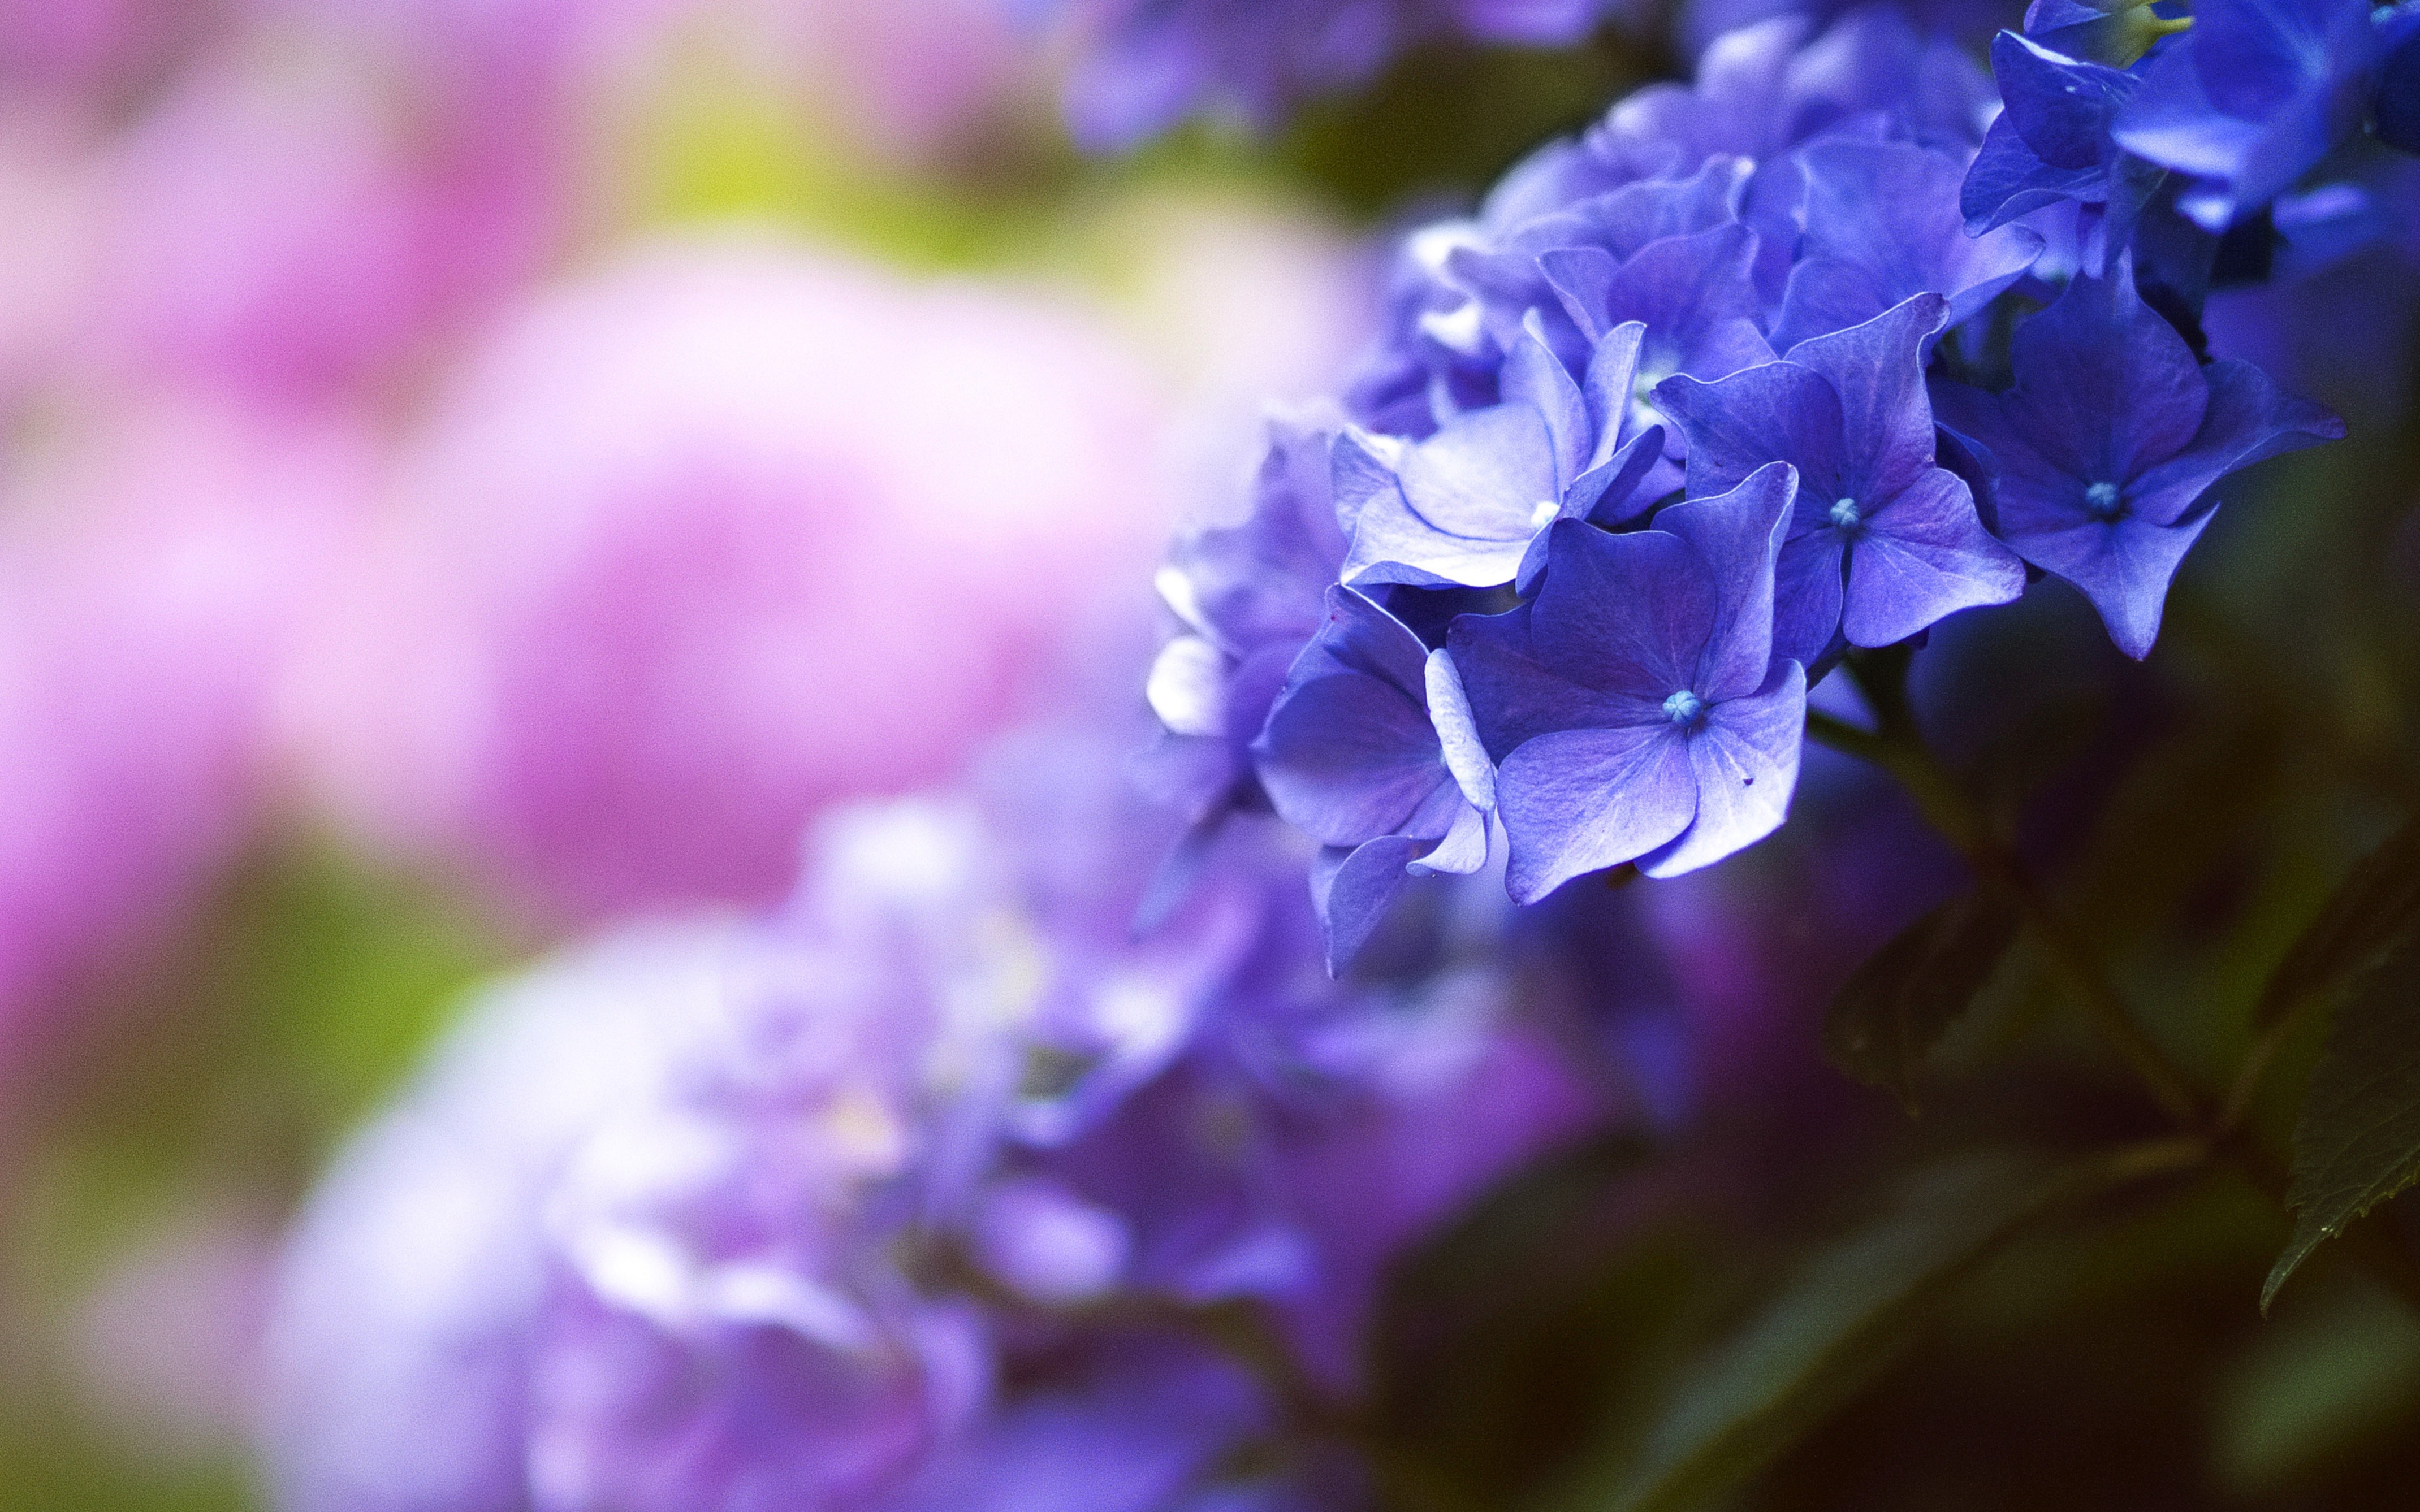 nuovo fiore wallpaper hd,blu,viola,viola,lavanda,fiore